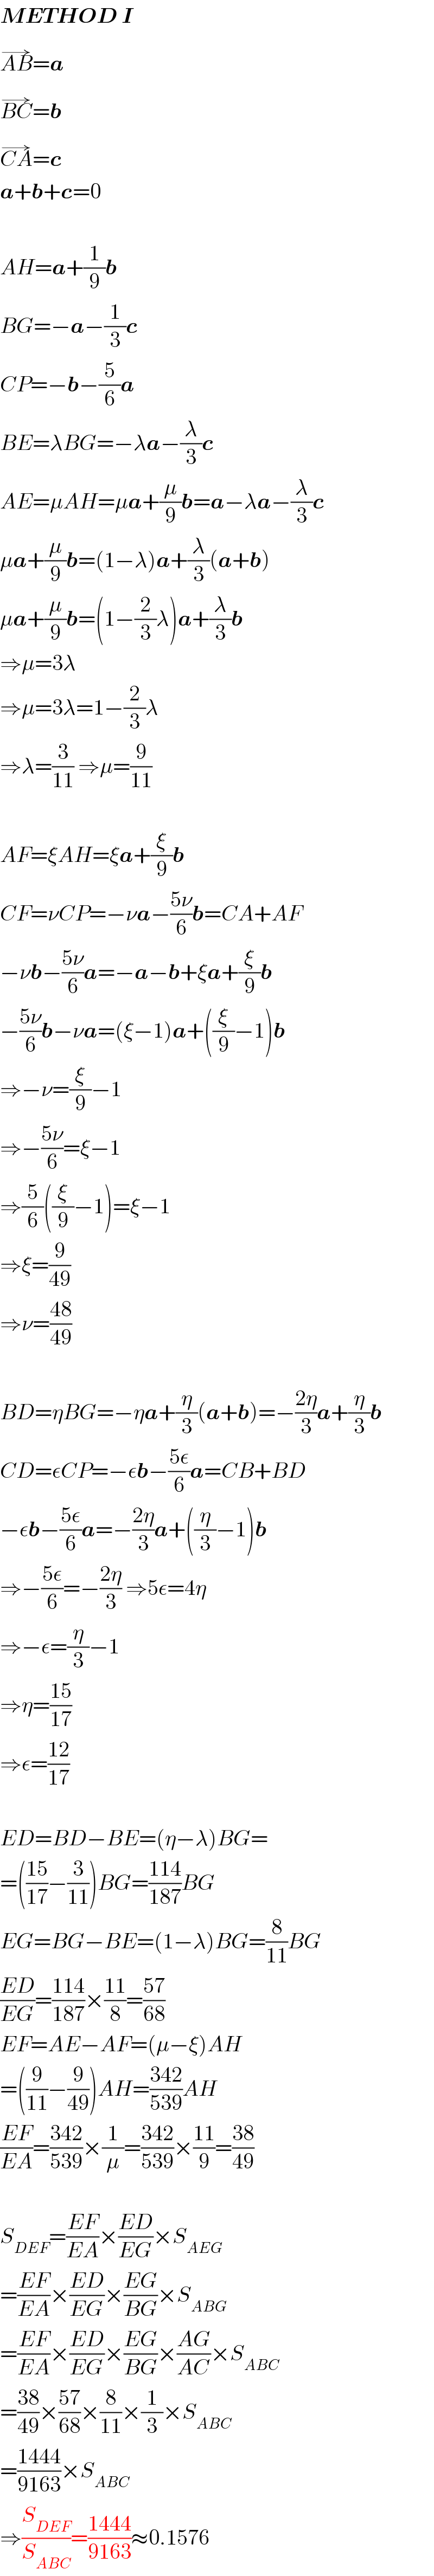 METHOD I  AB^(→) =a  BC^(→) =b  CA^(→) =c  a+b+c=0    AH=a+(1/9)b  BG=−a−(1/3)c  CP=−b−(5/6)a  BE=λBG=−λa−(λ/3)c  AE=μAH=μa+(μ/9)b=a−λa−(λ/3)c  μa+(μ/9)b=(1−λ)a+(λ/3)(a+b)  μa+(μ/9)b=(1−(2/3)λ)a+(λ/3)b  ⇒μ=3λ  ⇒μ=3λ=1−(2/3)λ  ⇒λ=(3/(11)) ⇒μ=(9/(11))    AF=ξAH=ξa+(ξ/9)b  CF=νCP=−νa−((5ν)/6)b=CA+AF  −νb−((5ν)/6)a=−a−b+ξa+(ξ/9)b  −((5ν)/6)b−νa=(ξ−1)a+((ξ/9)−1)b  ⇒−ν=(ξ/9)−1  ⇒−((5ν)/6)=ξ−1  ⇒(5/6)((ξ/9)−1)=ξ−1  ⇒ξ=(9/(49))  ⇒ν=((48)/(49))    BD=ηBG=−ηa+(η/3)(a+b)=−((2η)/3)a+(η/3)b  CD=εCP=−εb−((5ε)/6)a=CB+BD  −εb−((5ε)/6)a=−((2η)/3)a+((η/3)−1)b  ⇒−((5ε)/6)=−((2η)/3) ⇒5ε=4η  ⇒−ε=(η/3)−1  ⇒η=((15)/(17))  ⇒ε=((12)/(17))    ED=BD−BE=(η−λ)BG=  =(((15)/(17))−(3/(11)))BG=((114)/(187))BG  EG=BG−BE=(1−λ)BG=(8/(11))BG  ((ED)/(EG))=((114)/(187))×((11)/8)=((57)/(68))  EF=AE−AF=(μ−ξ)AH  =((9/(11))−(9/(49)))AH=((342)/(539))AH  ((EF)/(EA))=((342)/(539))×(1/μ)=((342)/(539))×((11)/9)=((38)/(49))    S_(DEF) =((EF)/(EA))×((ED)/(EG))×S_(AEG)   =((EF)/(EA))×((ED)/(EG))×((EG)/(BG))×S_(ABG)   =((EF)/(EA))×((ED)/(EG))×((EG)/(BG))×((AG)/(AC))×S_(ABC)   =((38)/(49))×((57)/(68))×(8/(11))×(1/3)×S_(ABC)   =((1444)/(9163))×S_(ABC)   ⇒(S_(DEF) /S_(ABC) )=((1444)/(9163))≈0.1576  